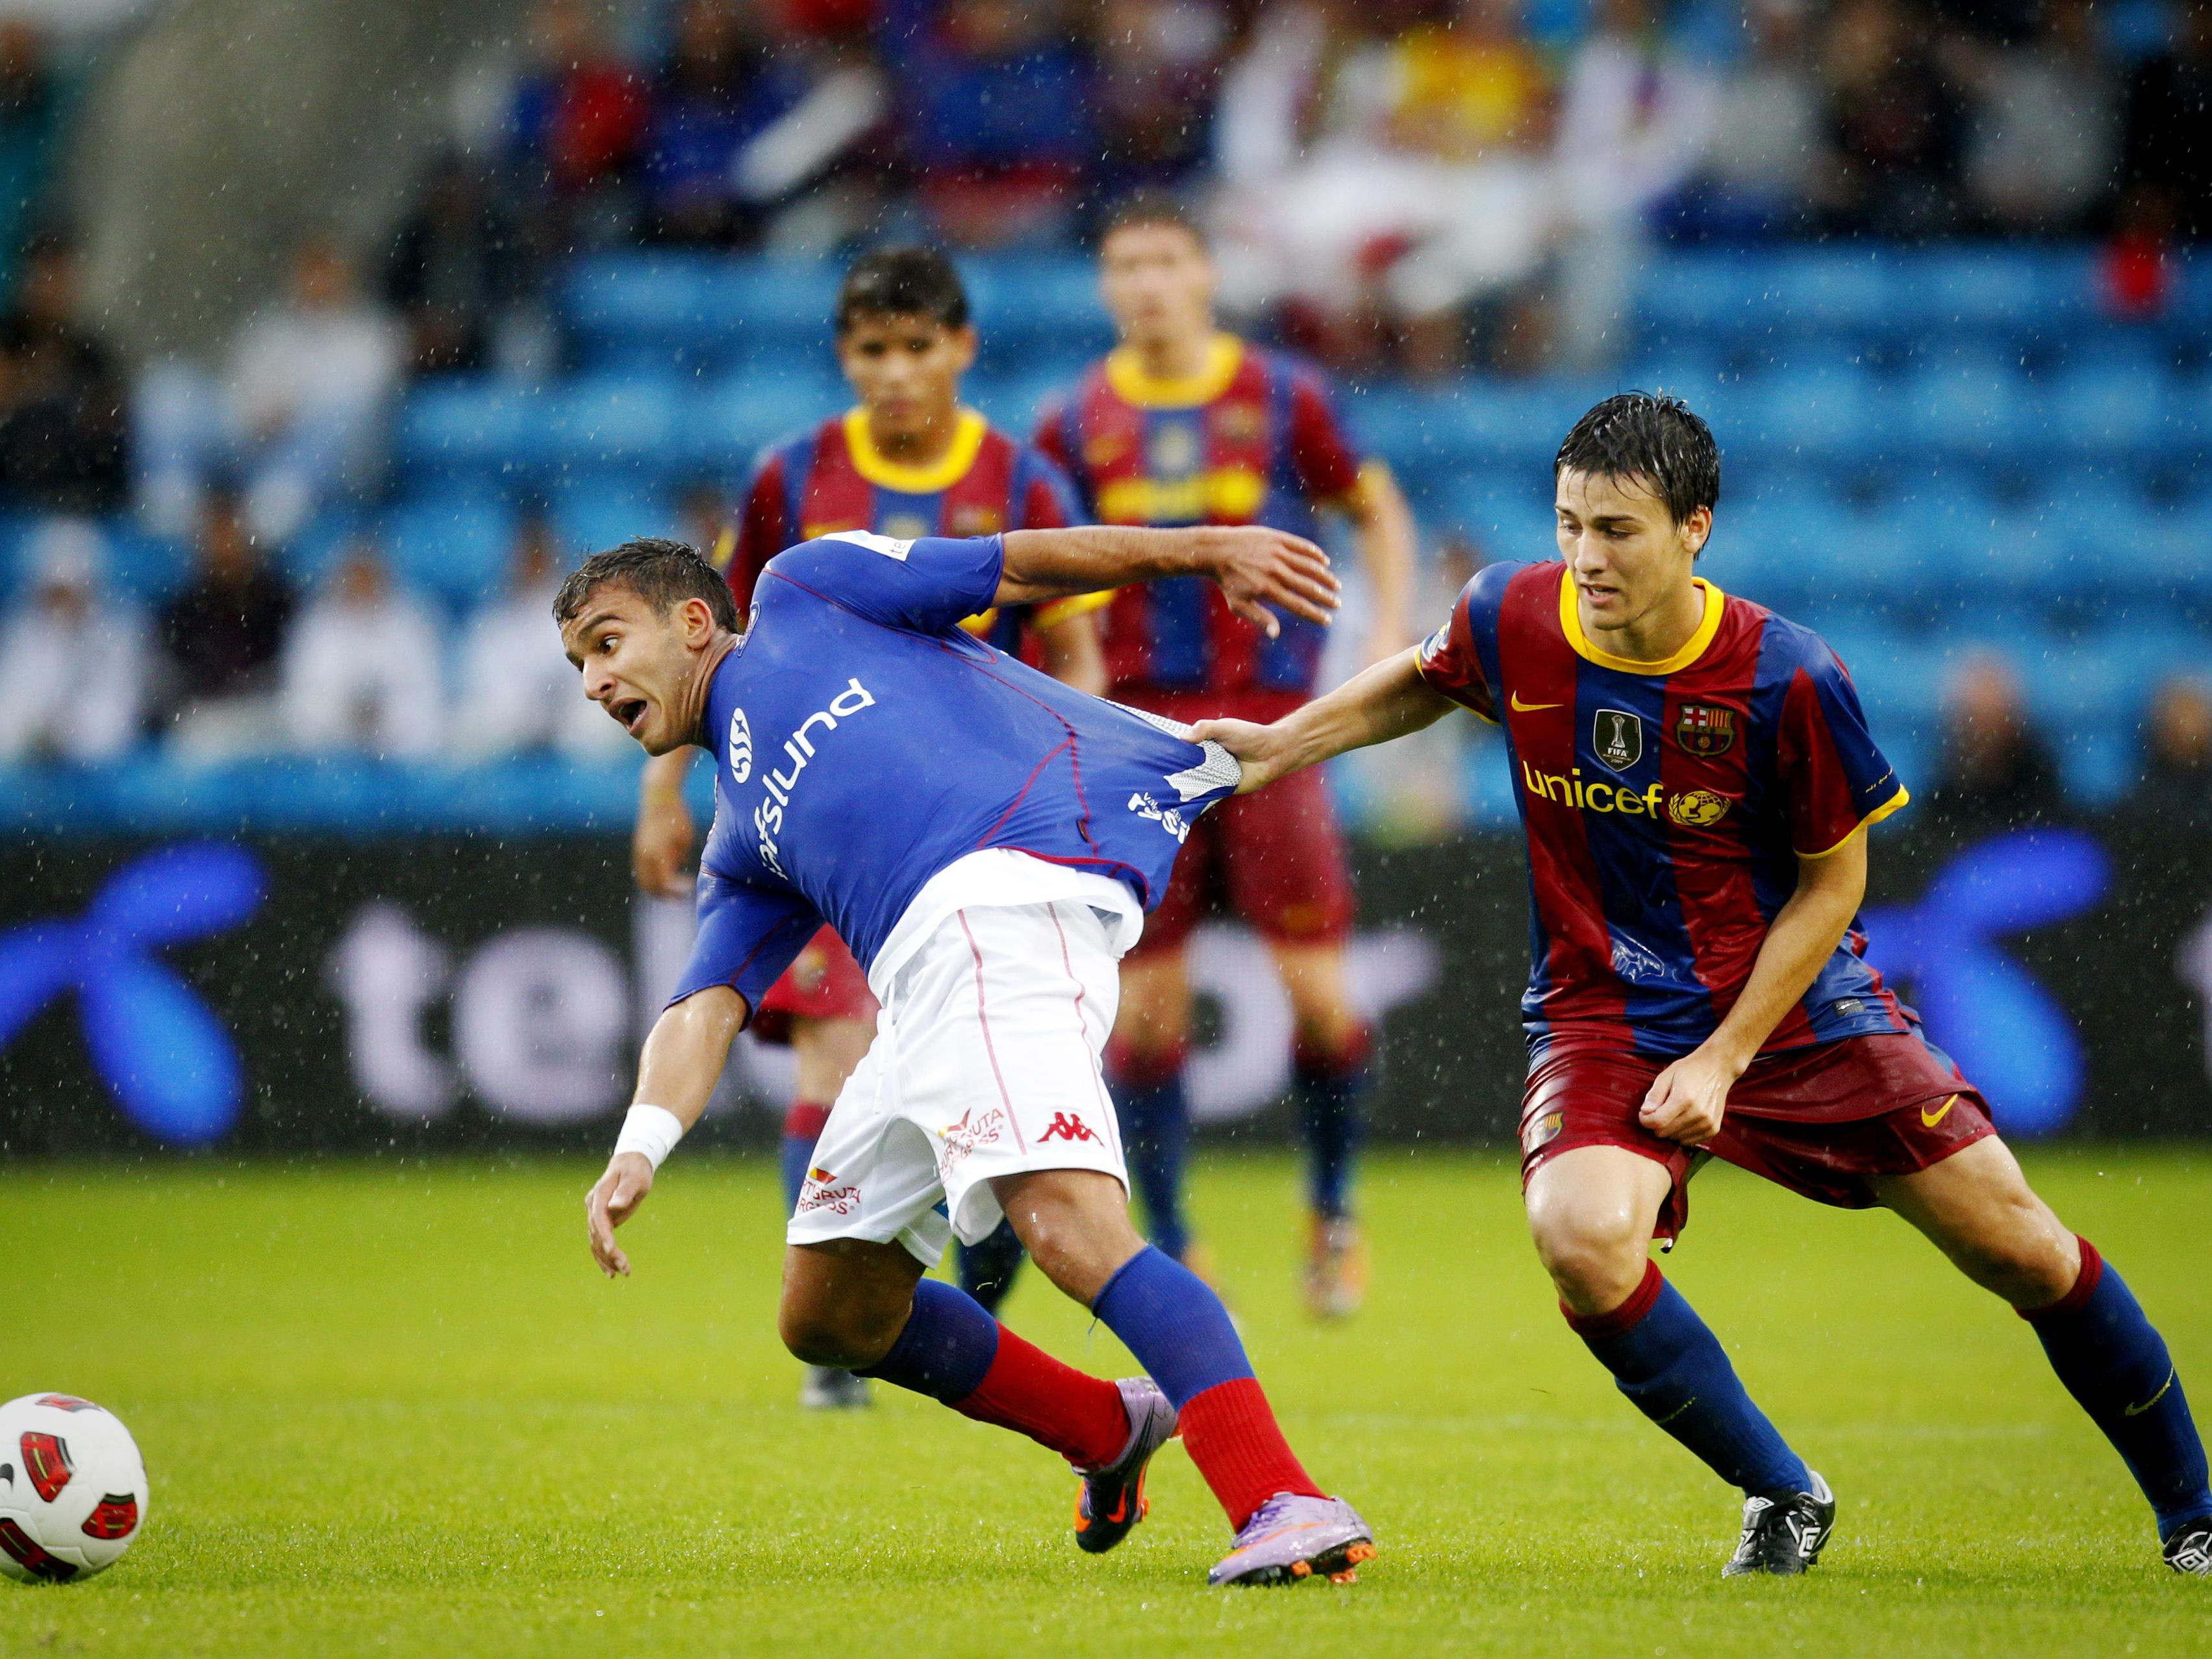 Riverola durchlief die Nachwuchsschule des FC Barcelona und verbuchte in der Saison 2011/12 unter dem damaligen Trainer Josep Guardiola einen Einsatz in der Champions League.